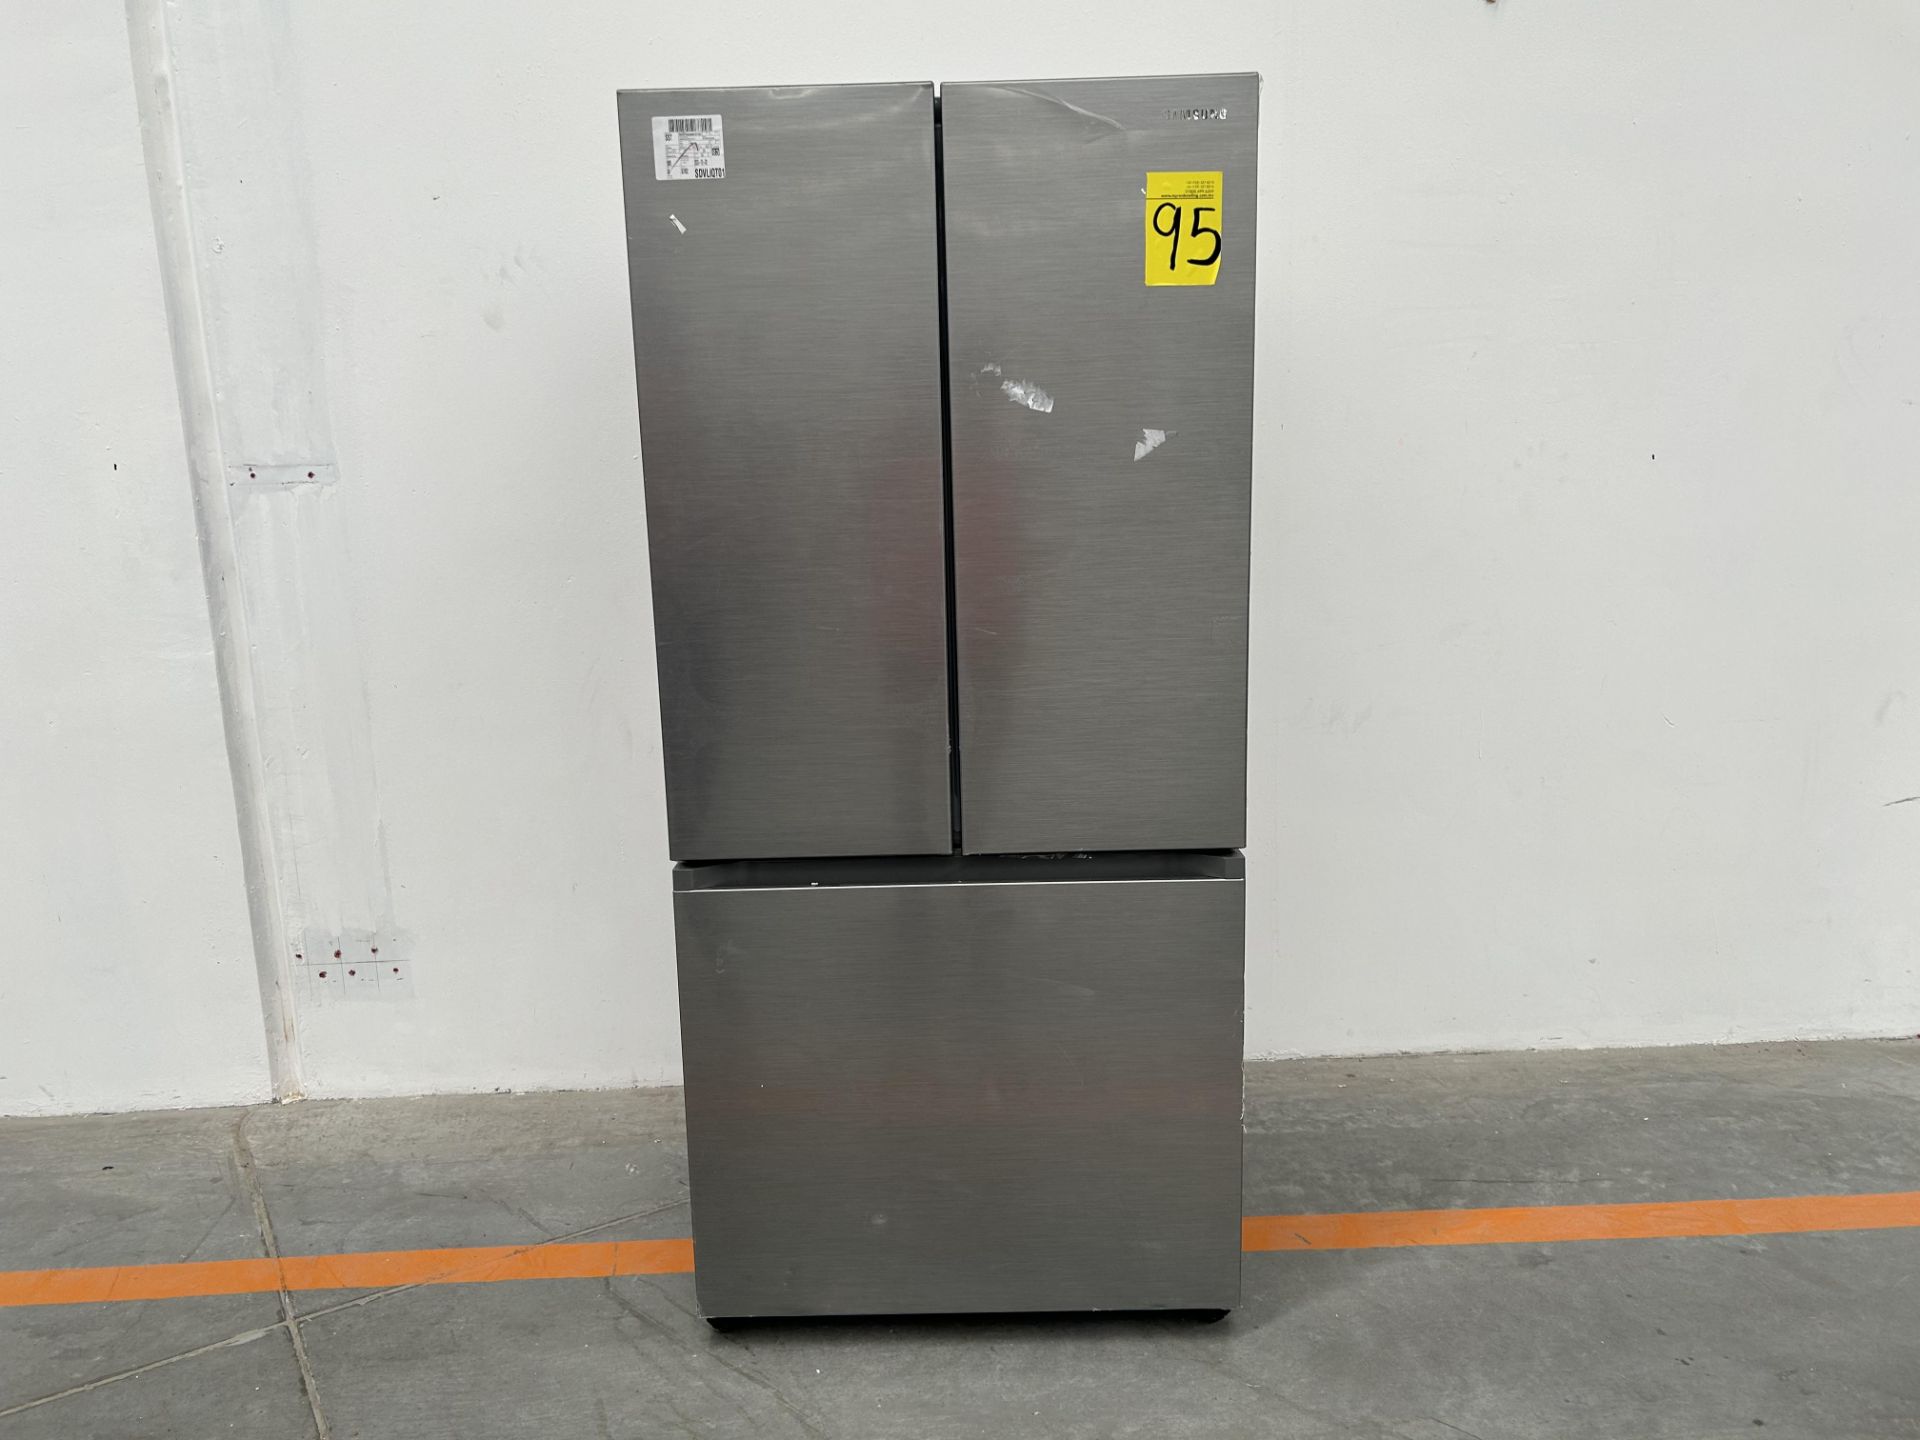 (NUEVO) Refrigerador Marca SAMSUNG, Modelo RF25C5151S9, Serie 00359T, Color GRIS